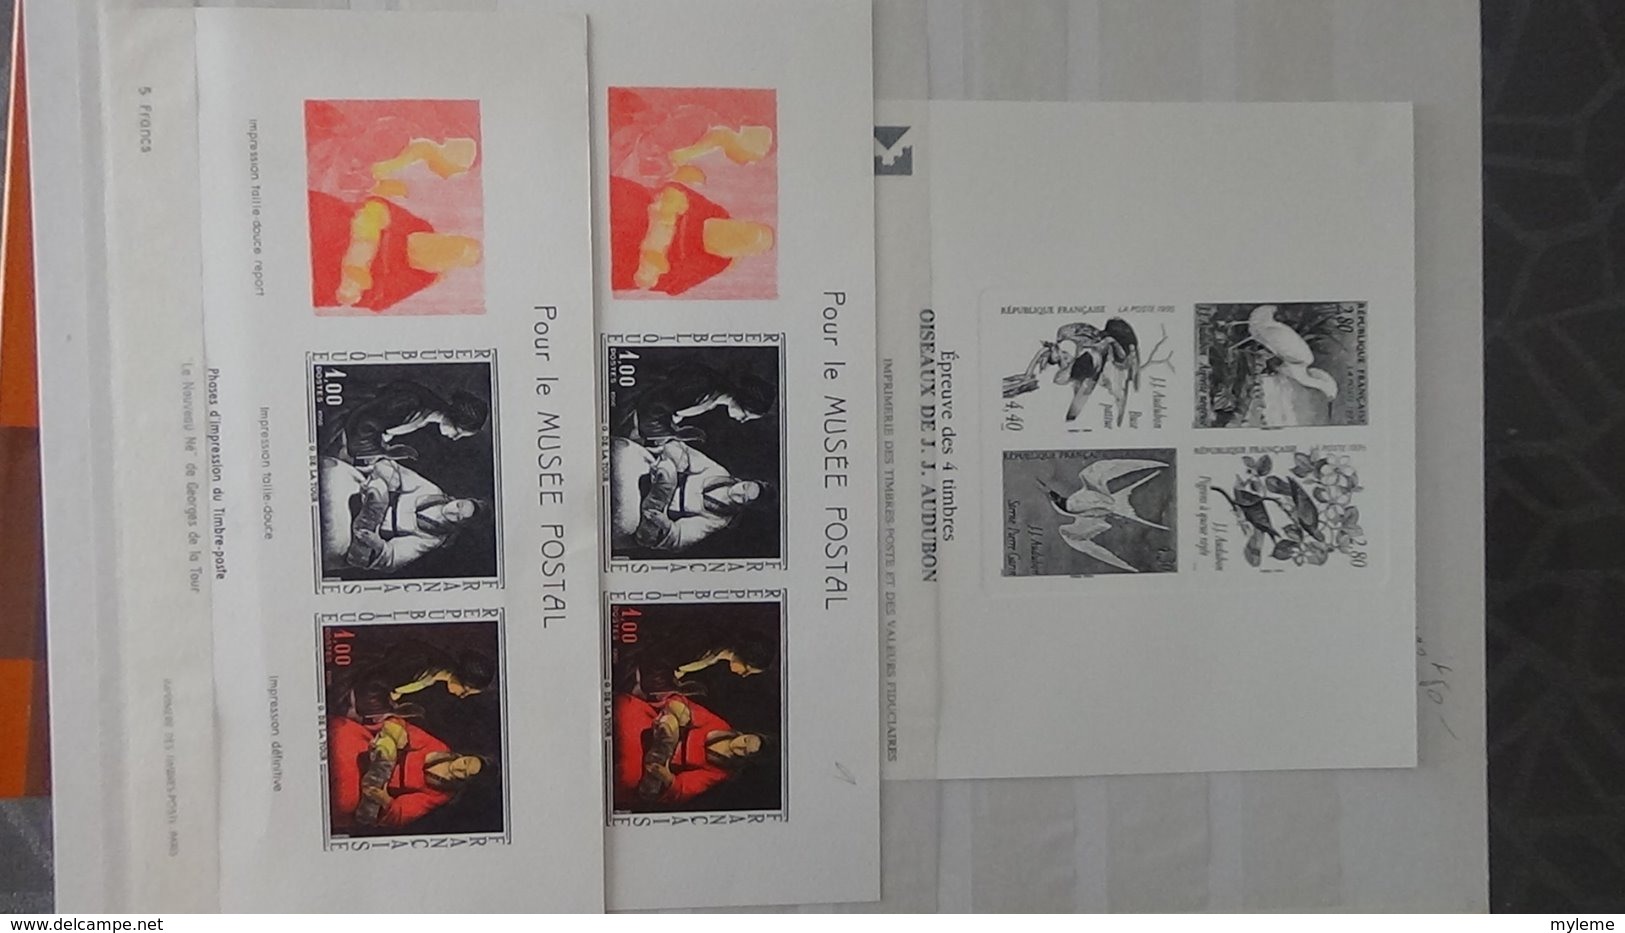 Epreuves du timbres, étapes succésives, imprimerie des timbres, Philexfrance 1999 .... A saisir !!!